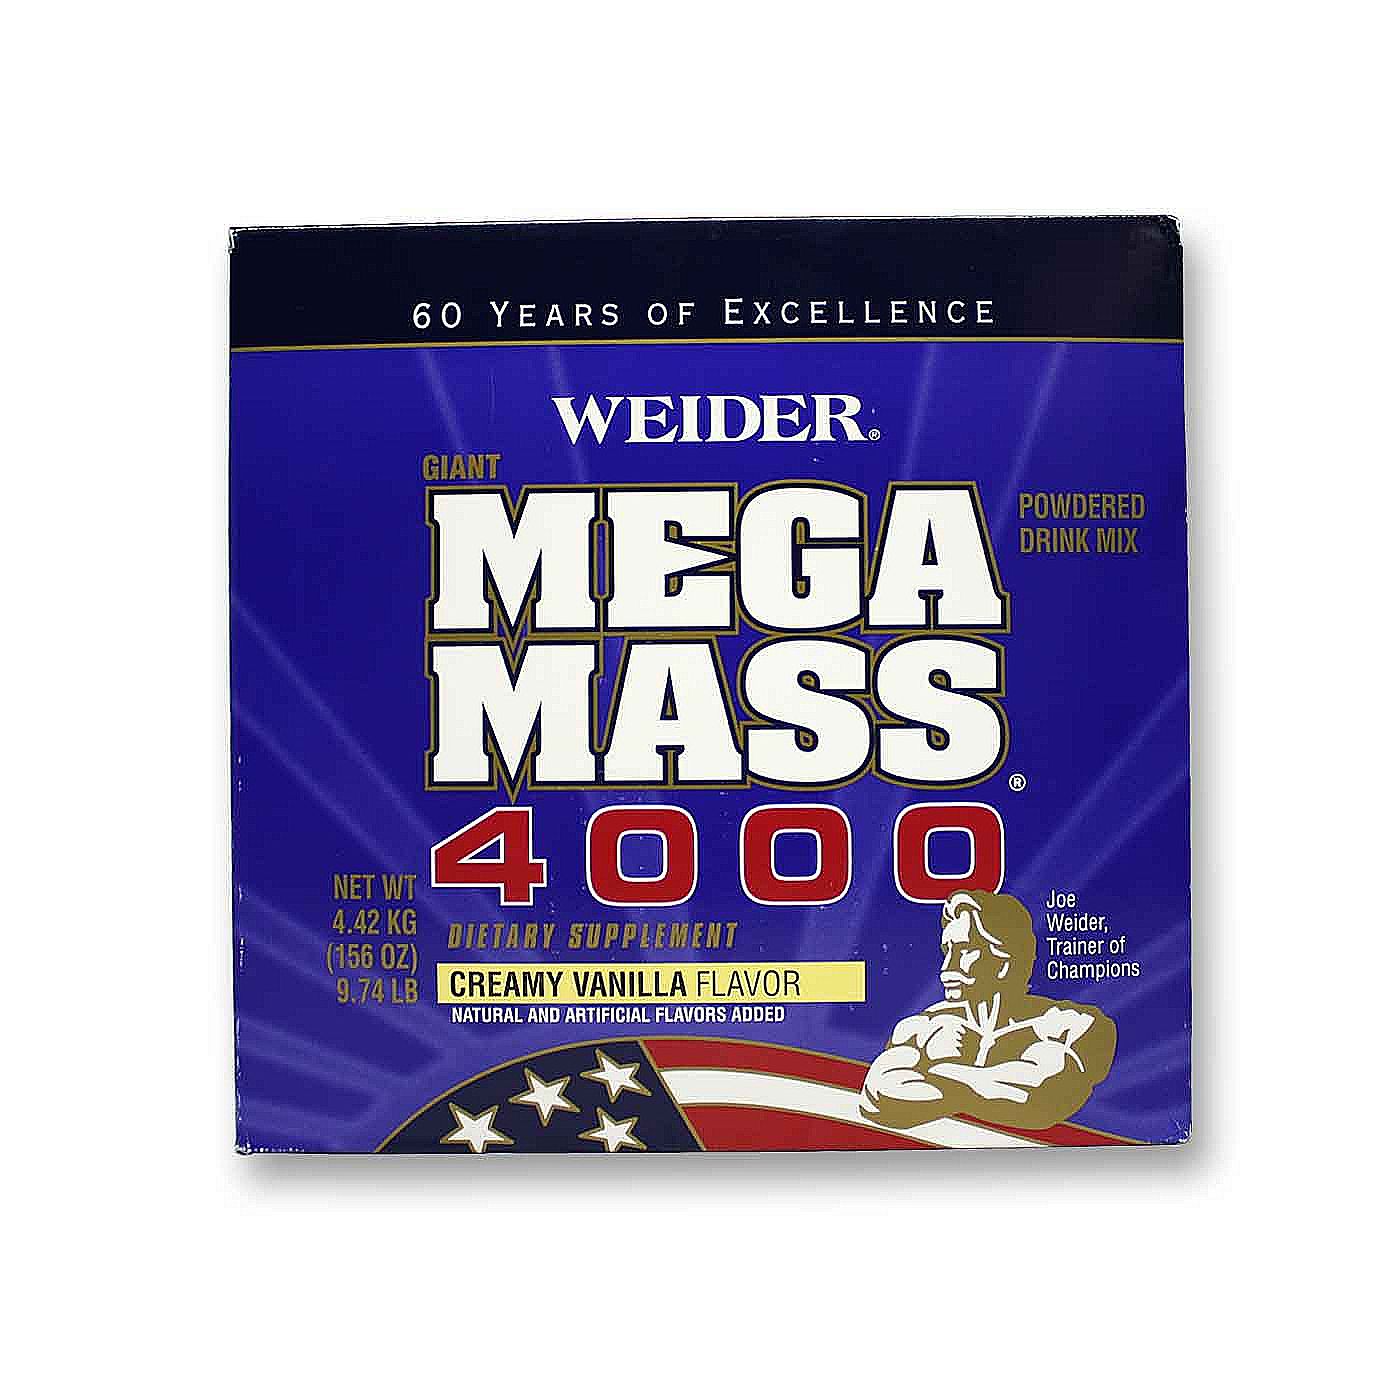 Joe Weider Mega Mass 4000 bei Metasport